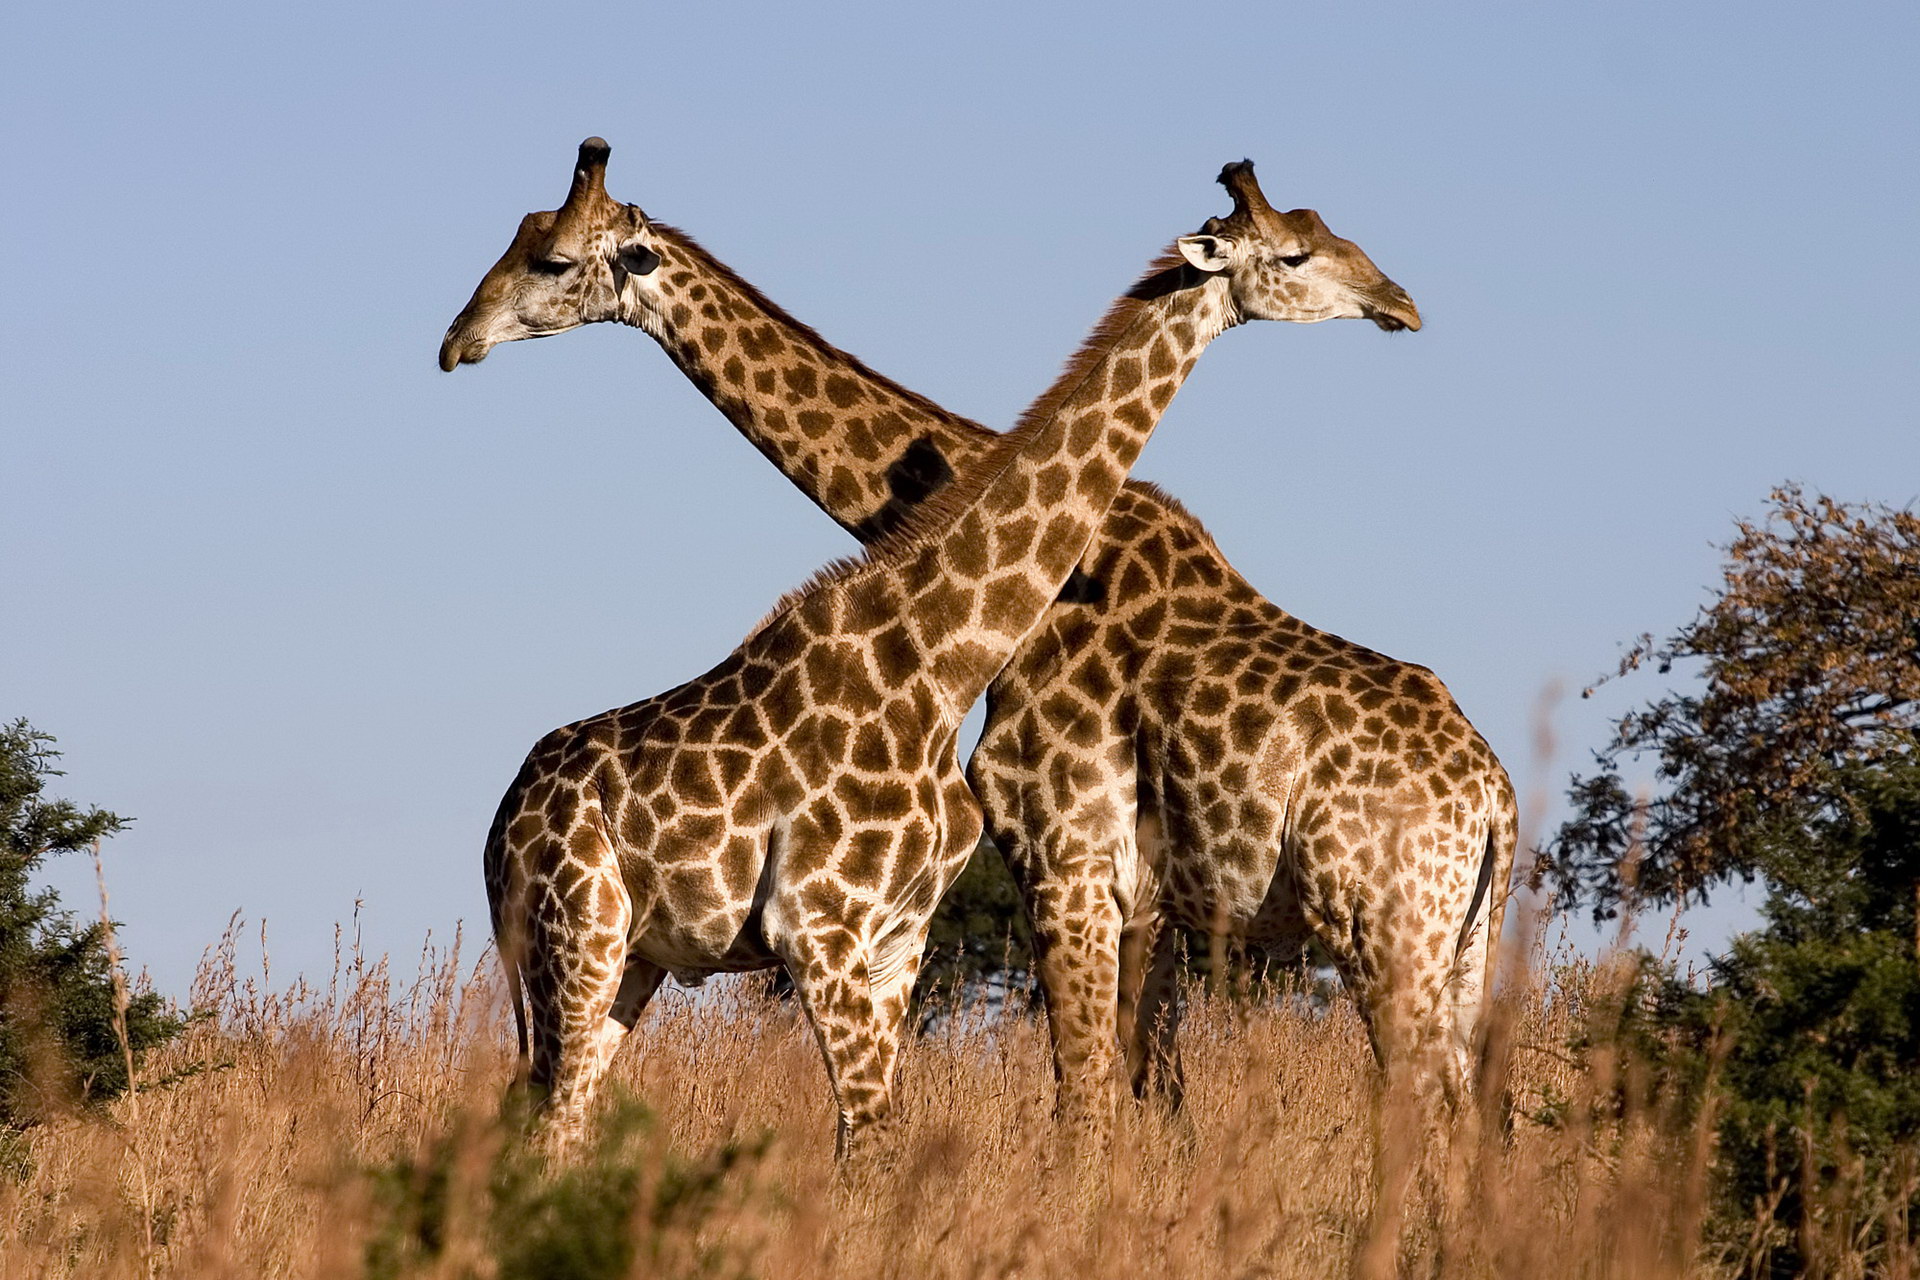 I-pair of giraffes